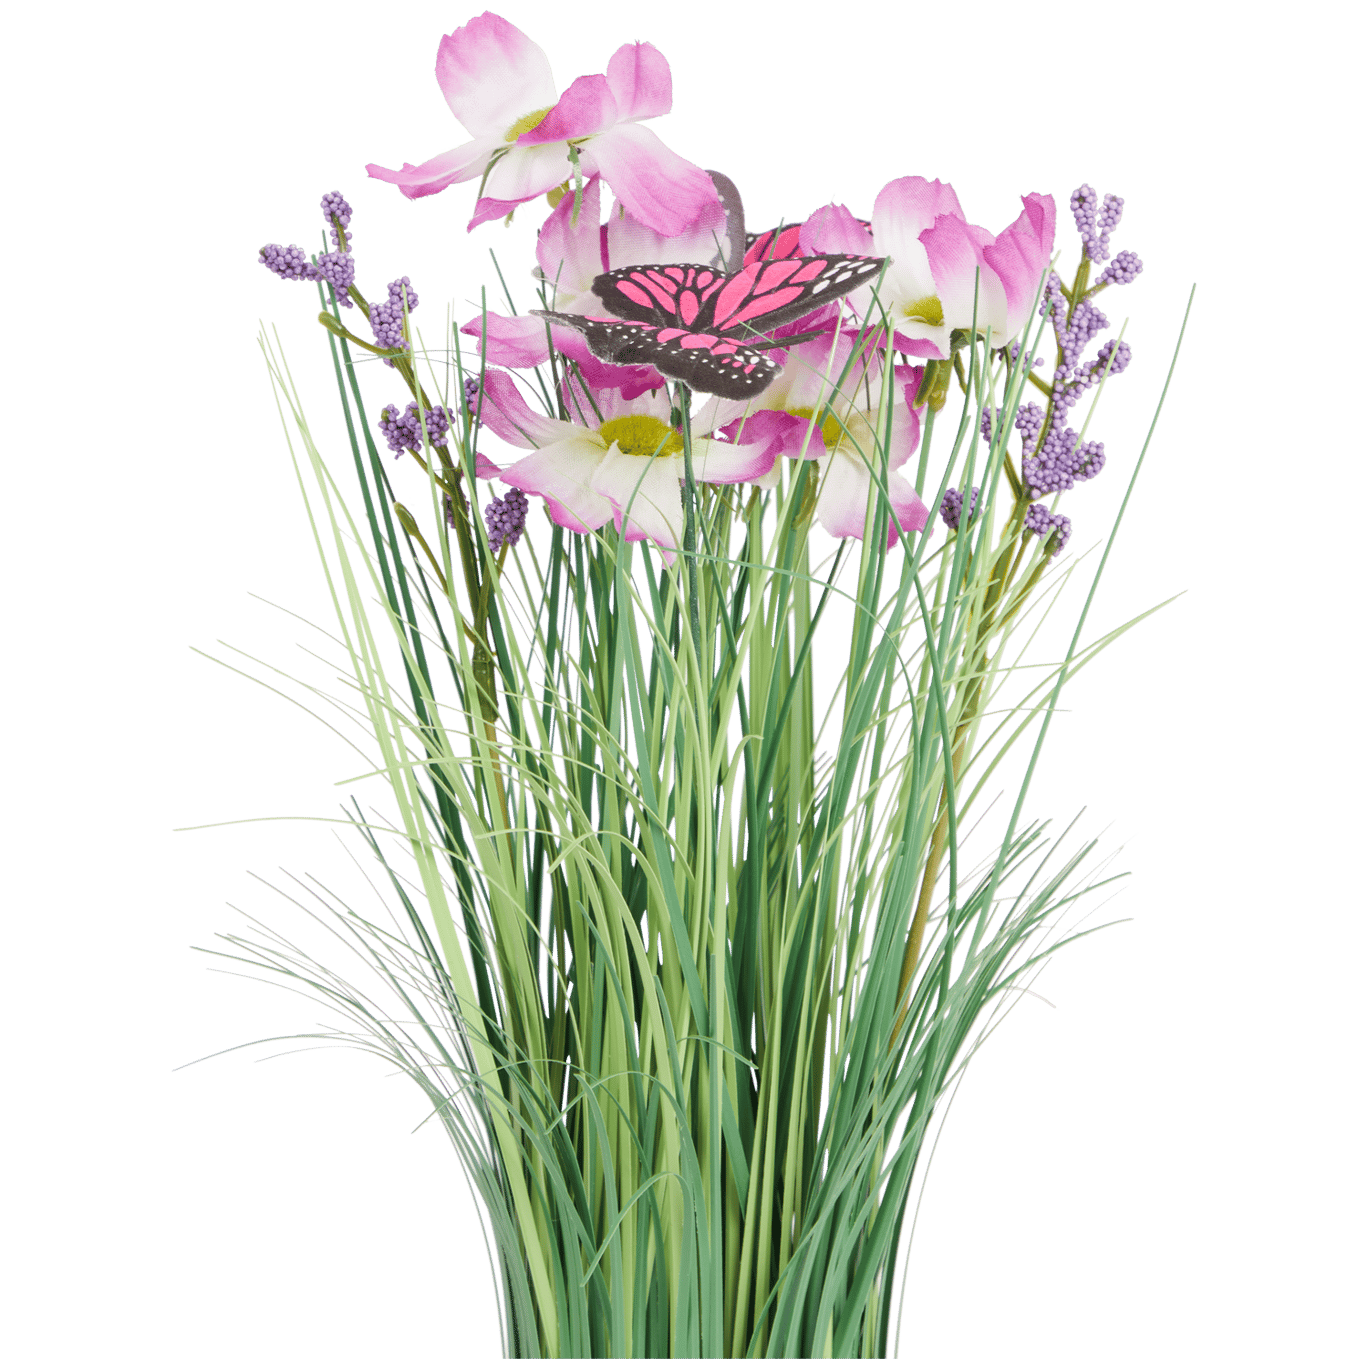 Trs umělé trávy s květinami a motýly